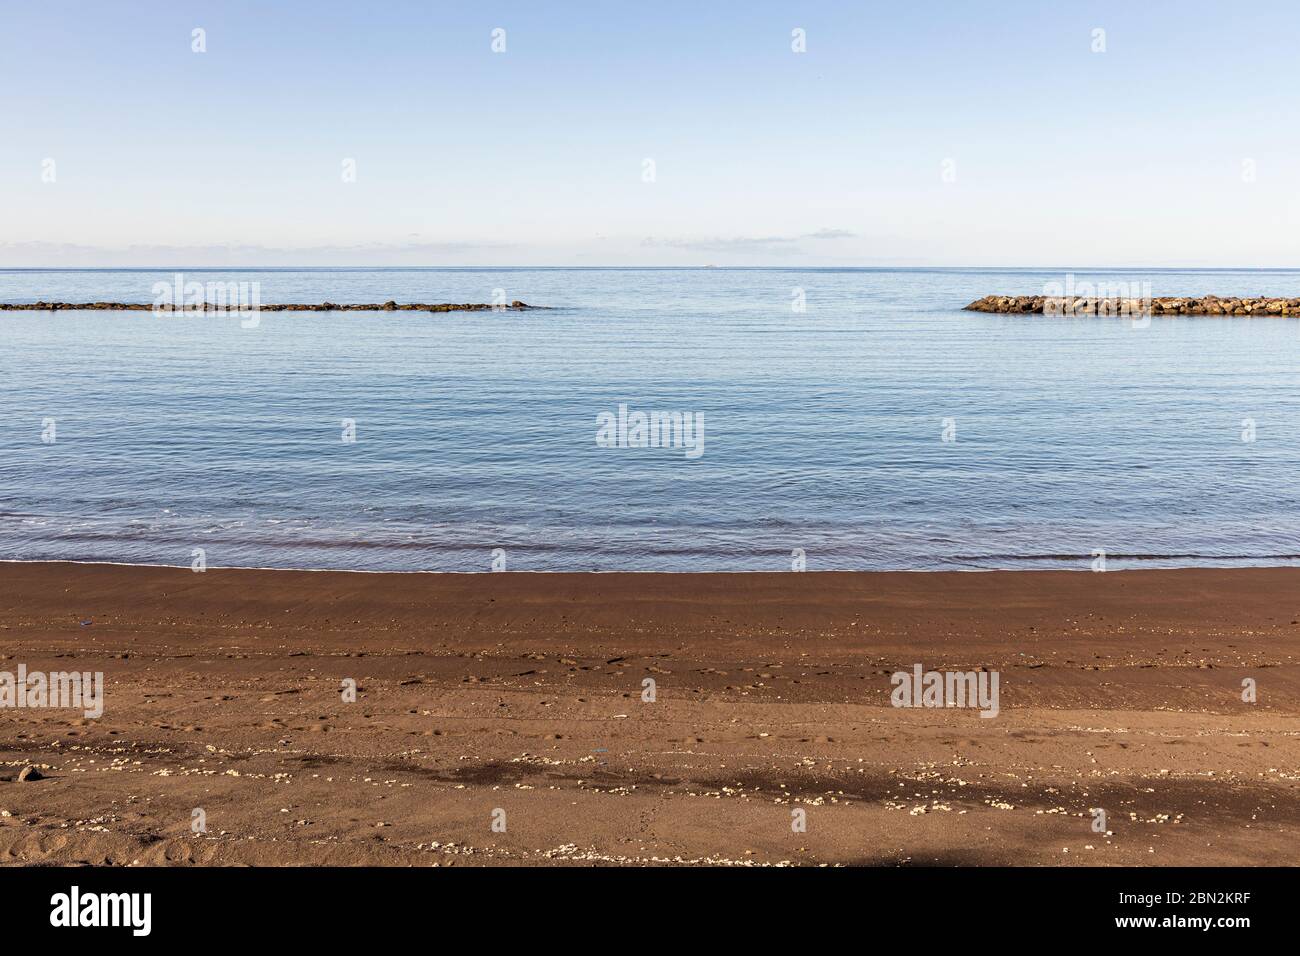 Imagen minimalista de playa, costa, rompeolas y cielo en Costa Adeje, Tenerife, Islas Canarias, España Foto de stock